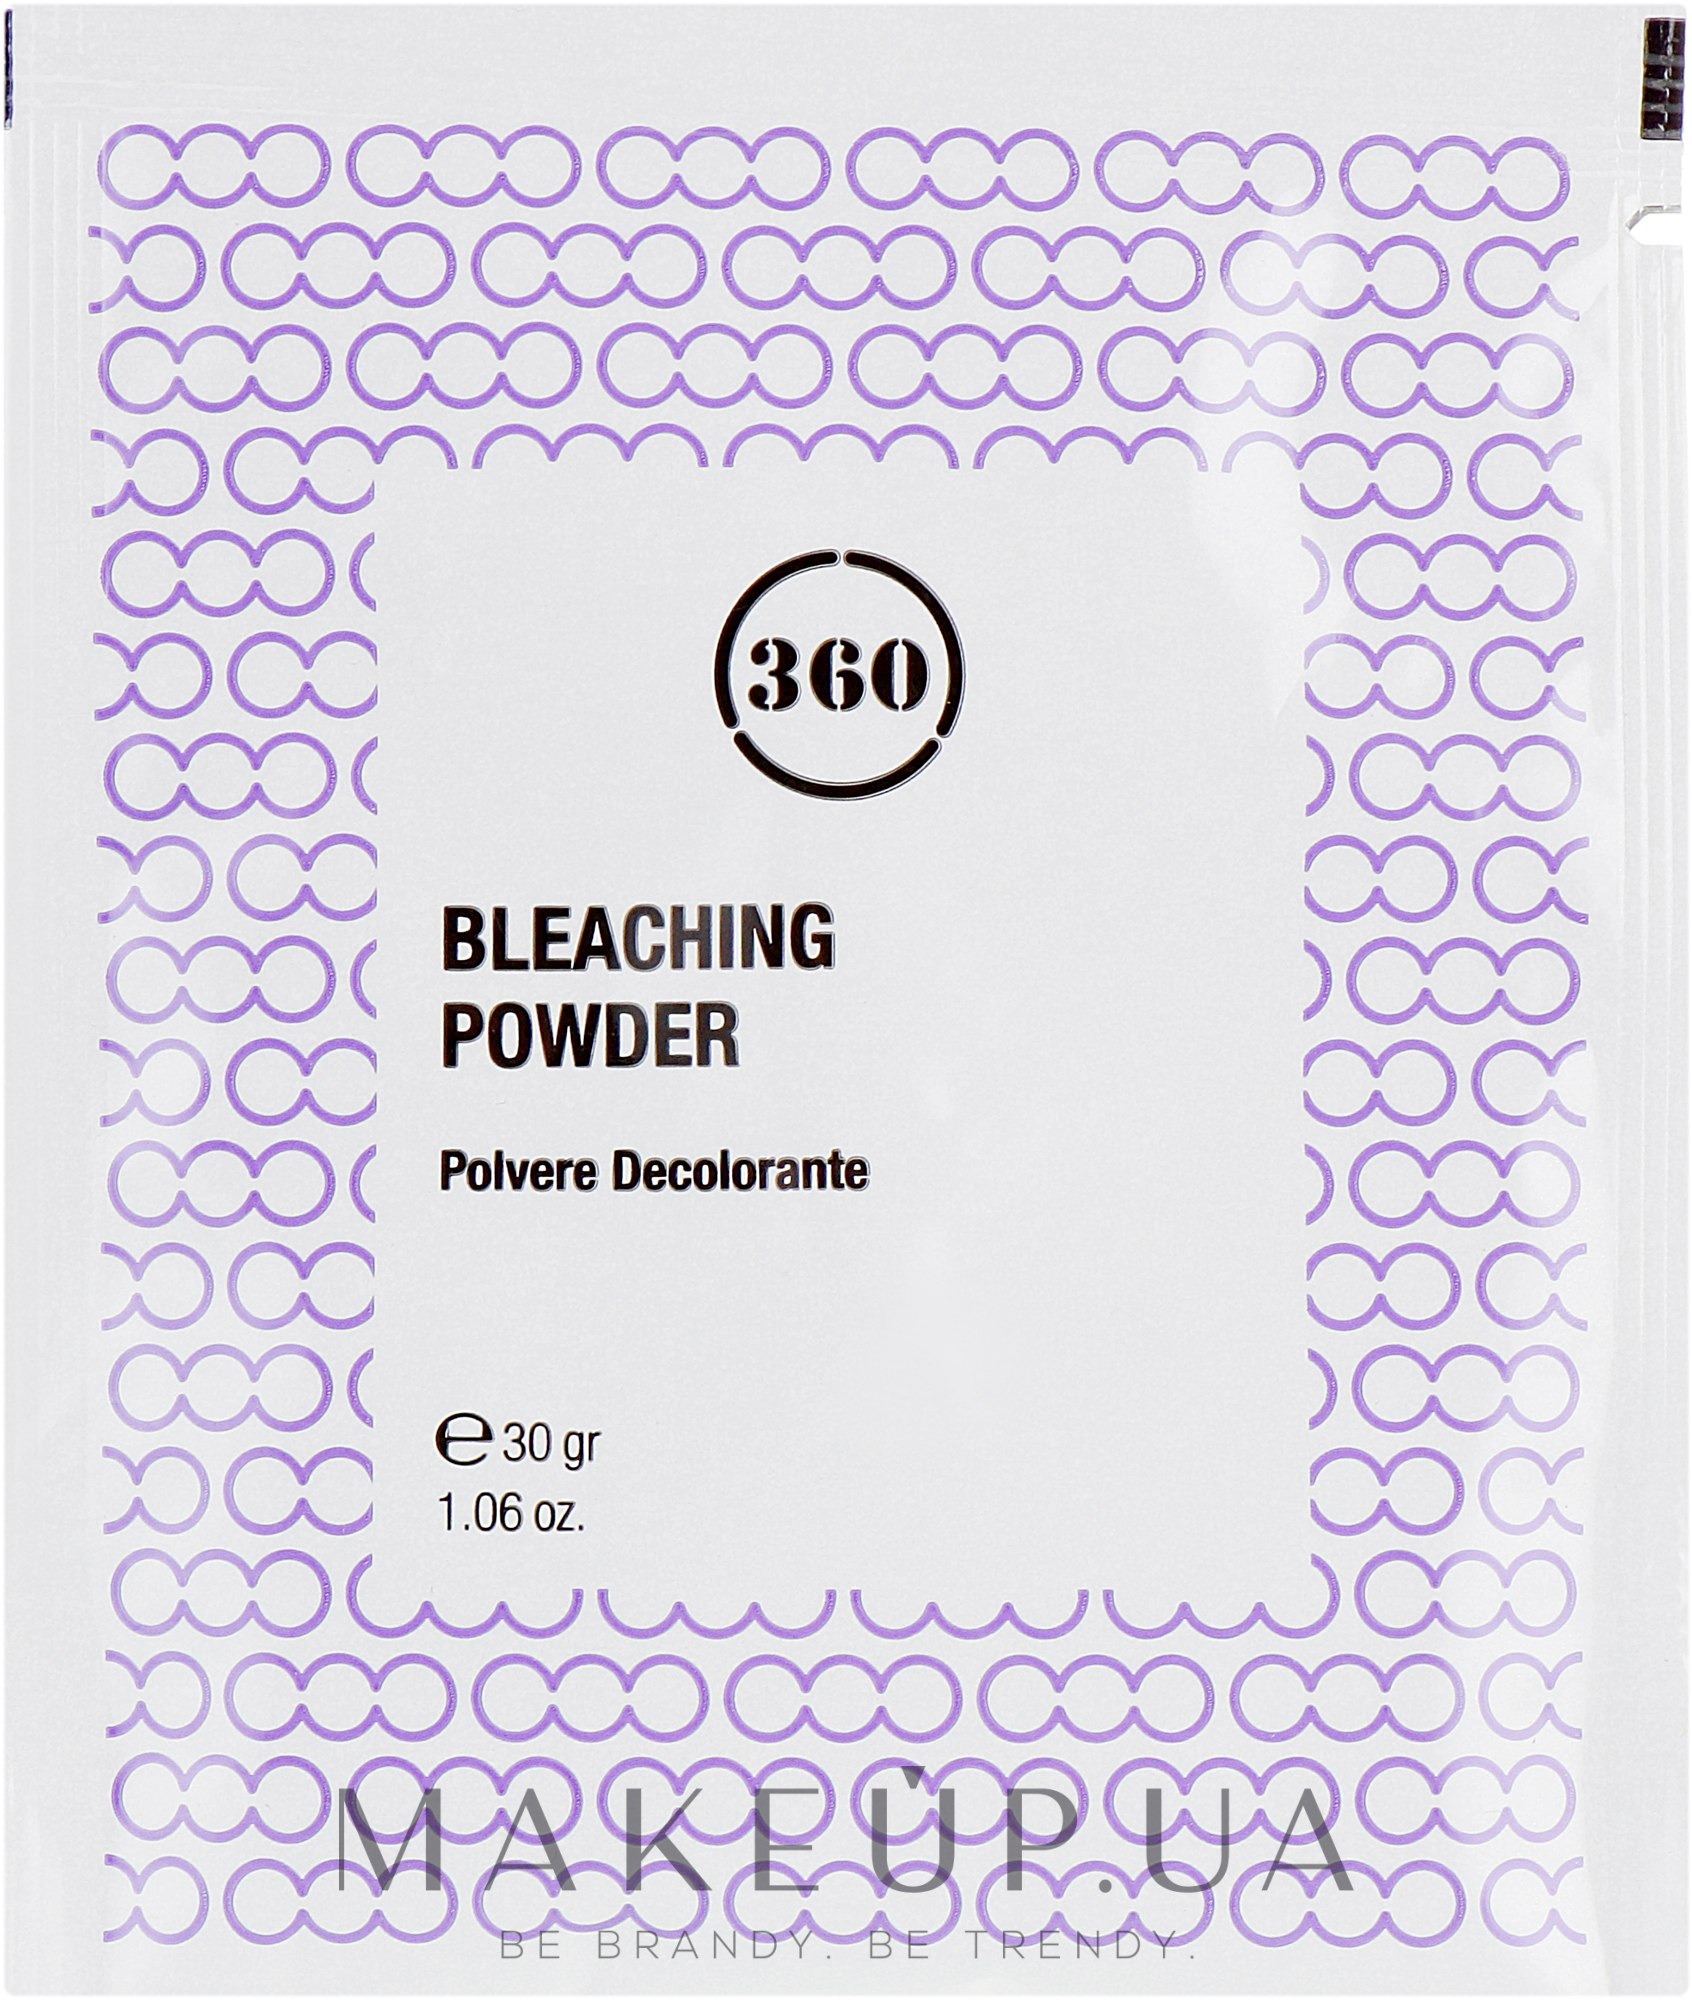 Освітлювальна пудра антижовта для волосся - 360 Bleaching Powder (міні) — фото 30g